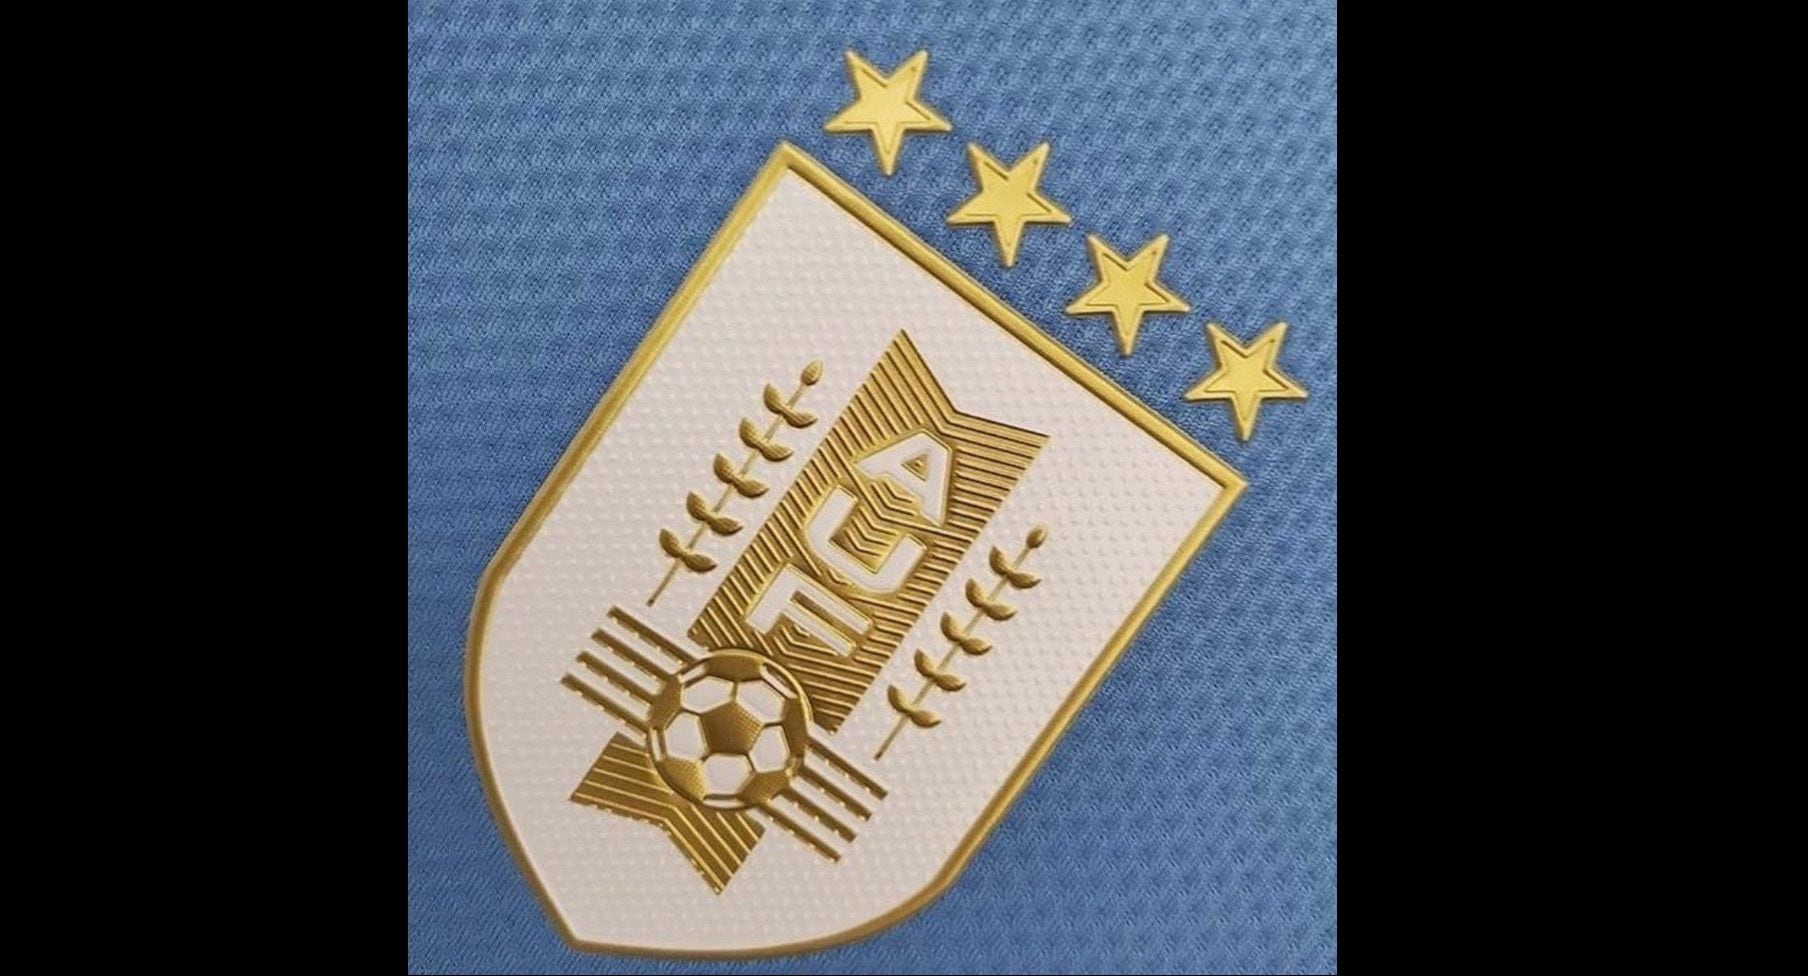 Por qué Uruguay usa 4 estrellas en su escudo? #Opinion por: @Otra pre